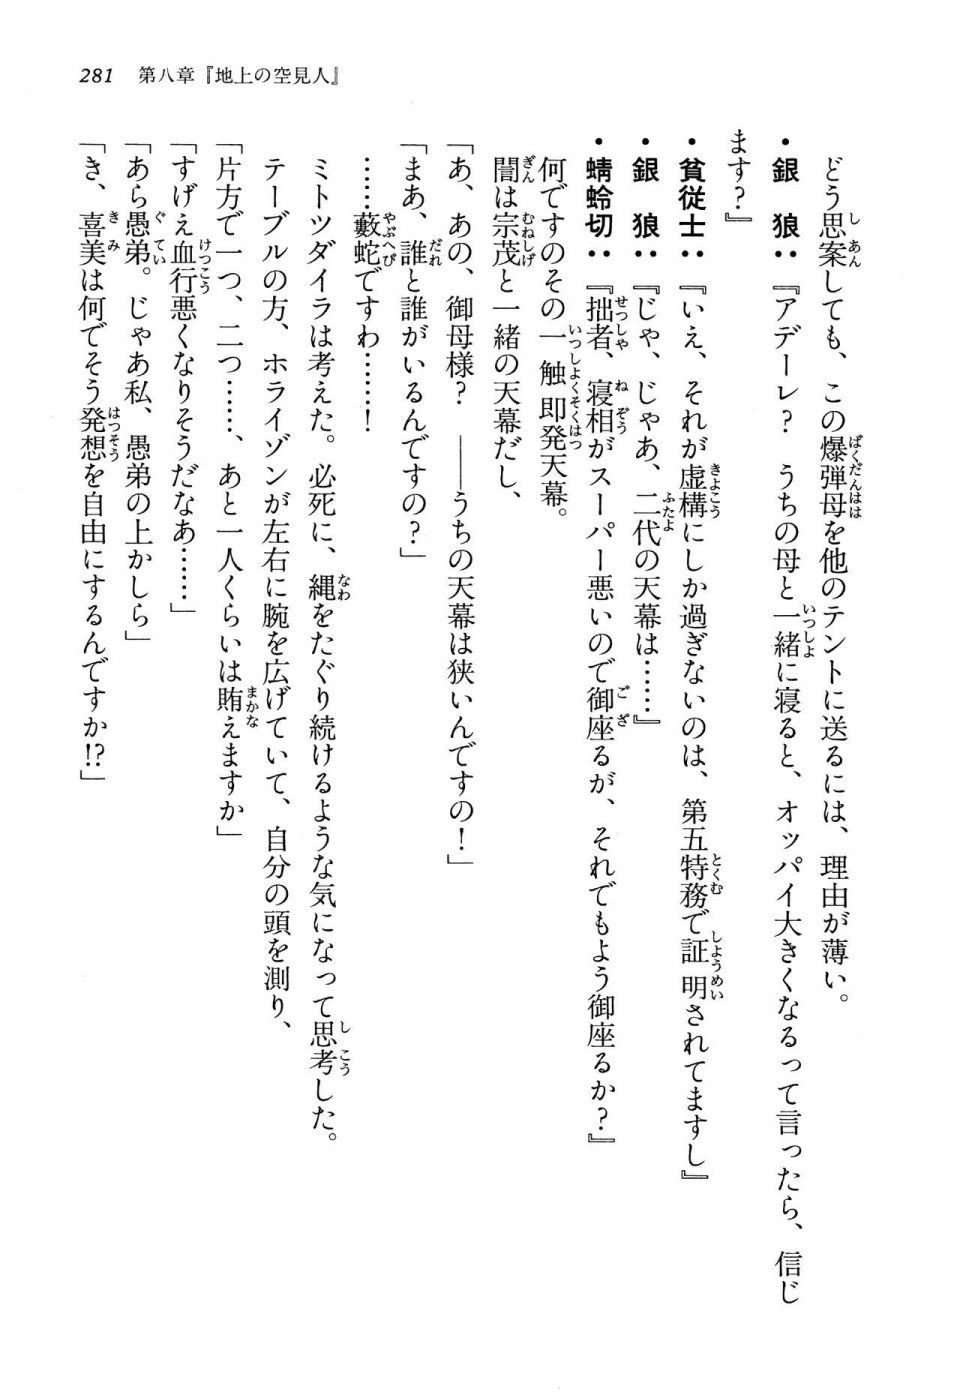 Kyoukai Senjou no Horizon LN Vol 13(6A) - Photo #281